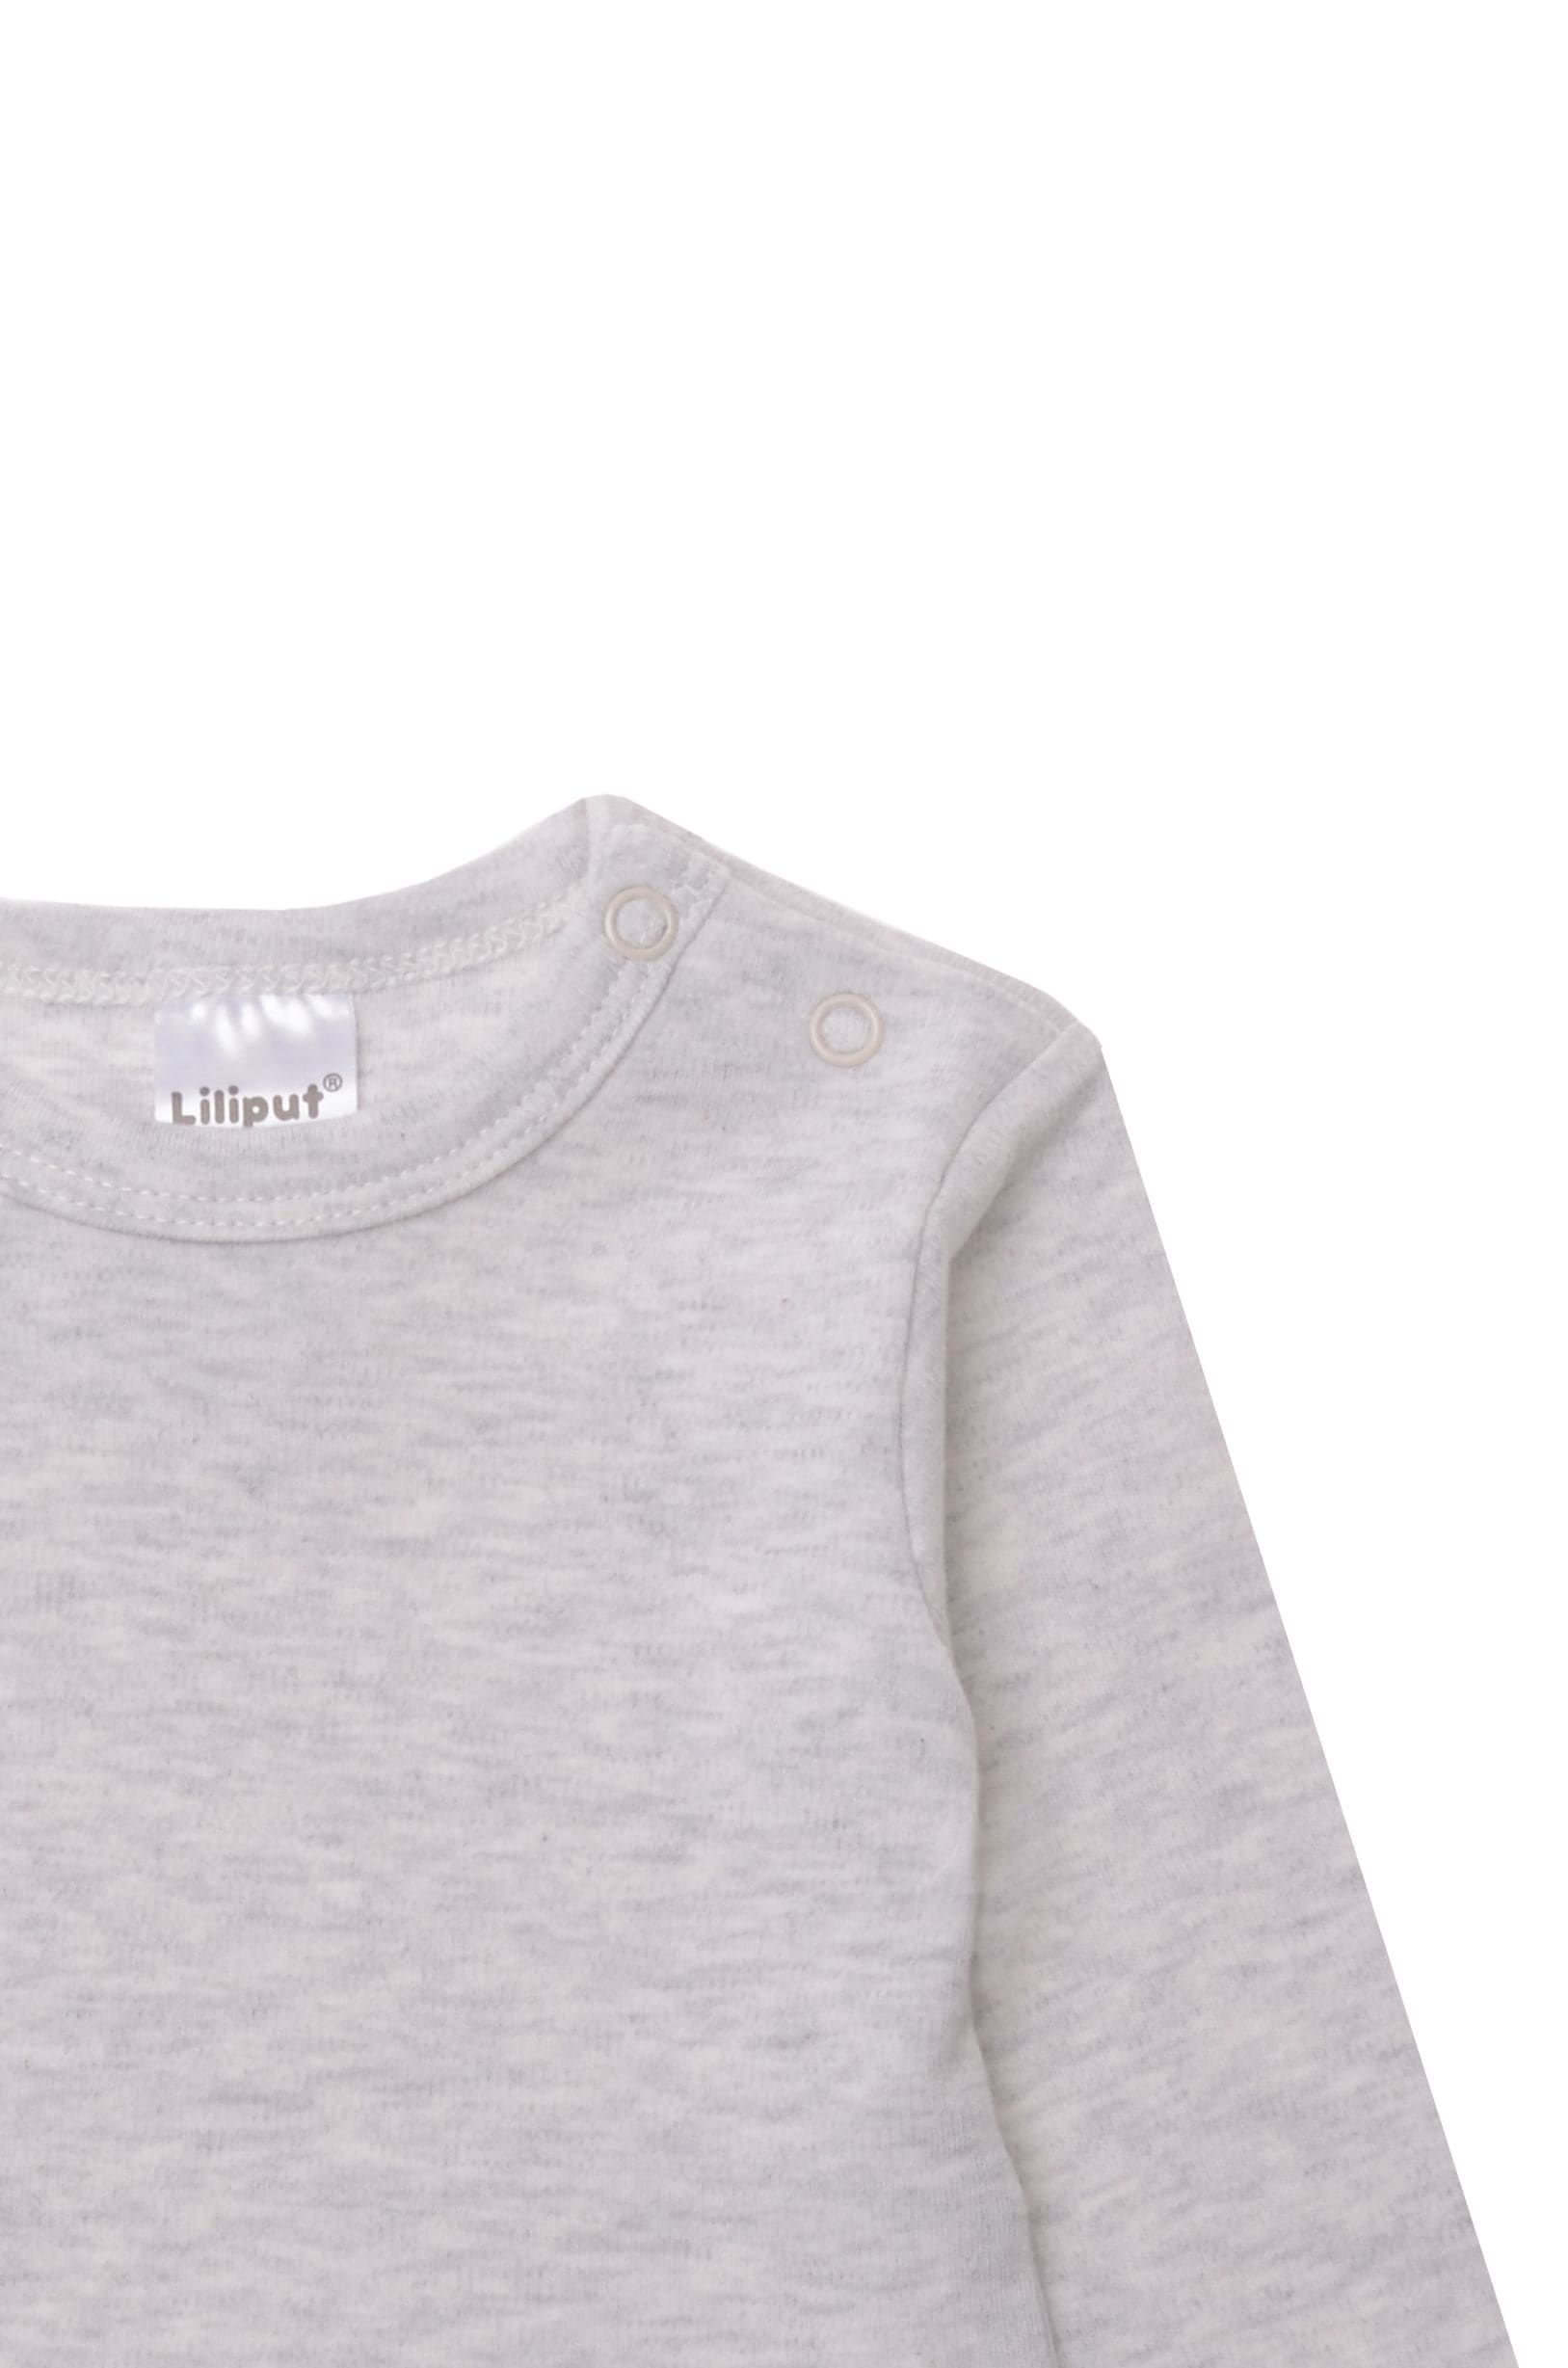 Liliput Langarmshirt »grau melange«, mit praktischen Druckknöpfen